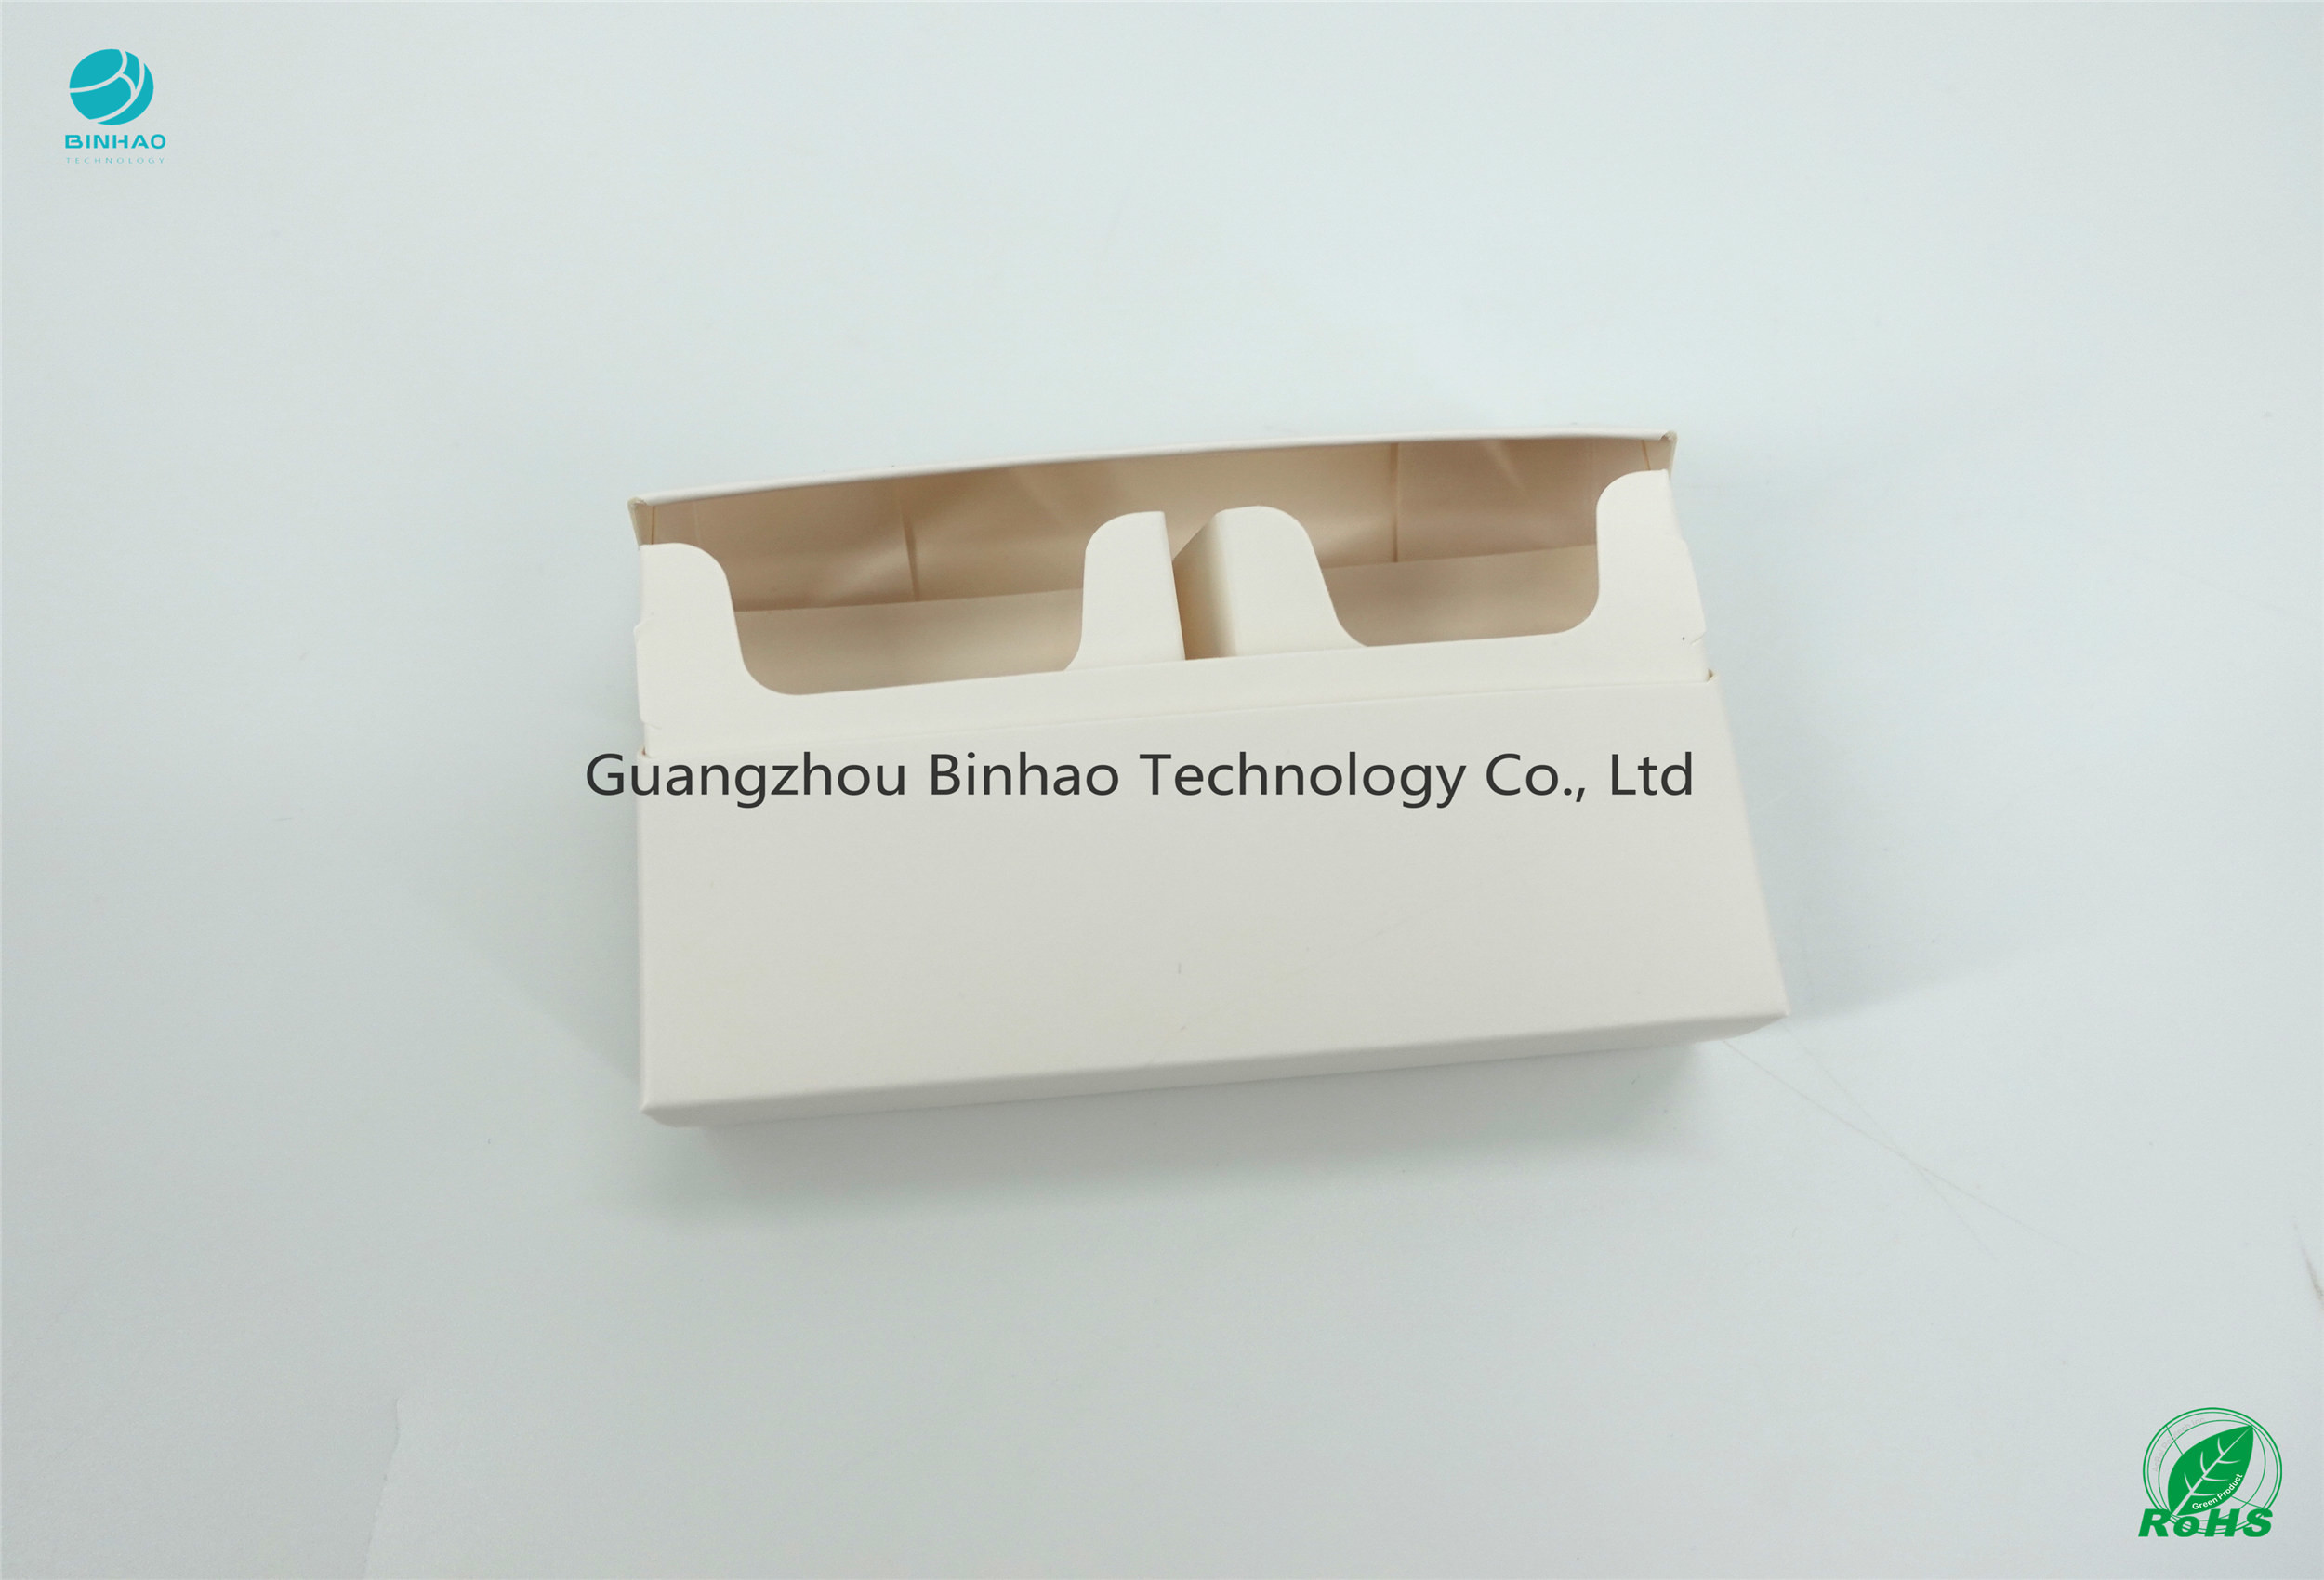 کارتن سفید ساده 220 گرم در 230 گرم برنز Grammage HNB E-Tobacco بسته بندی مواد موارد چاپ